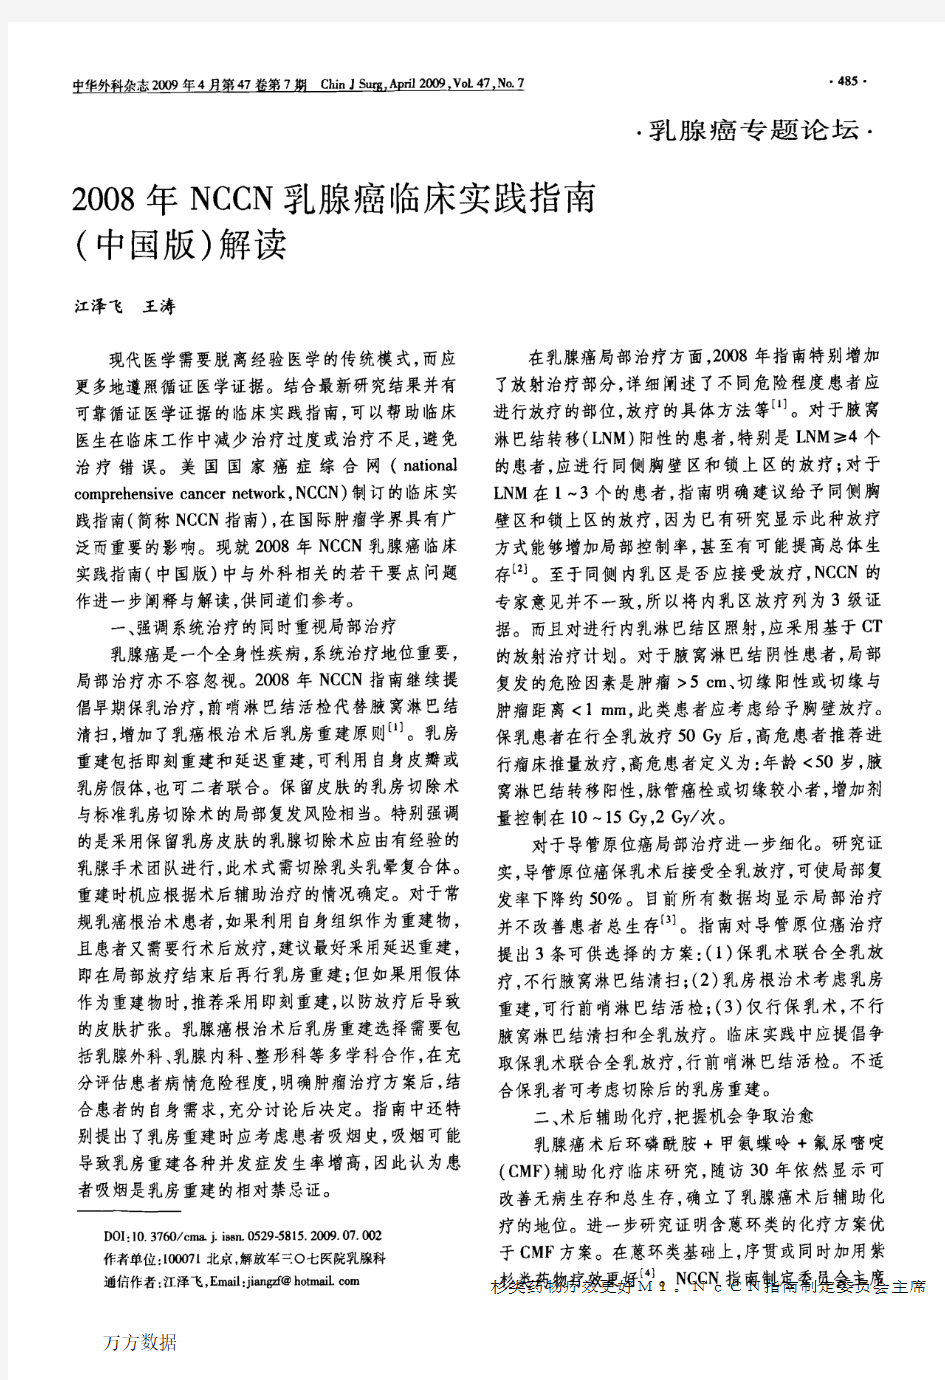 2008年NCCN乳腺癌临床实践指南(中国版)解读